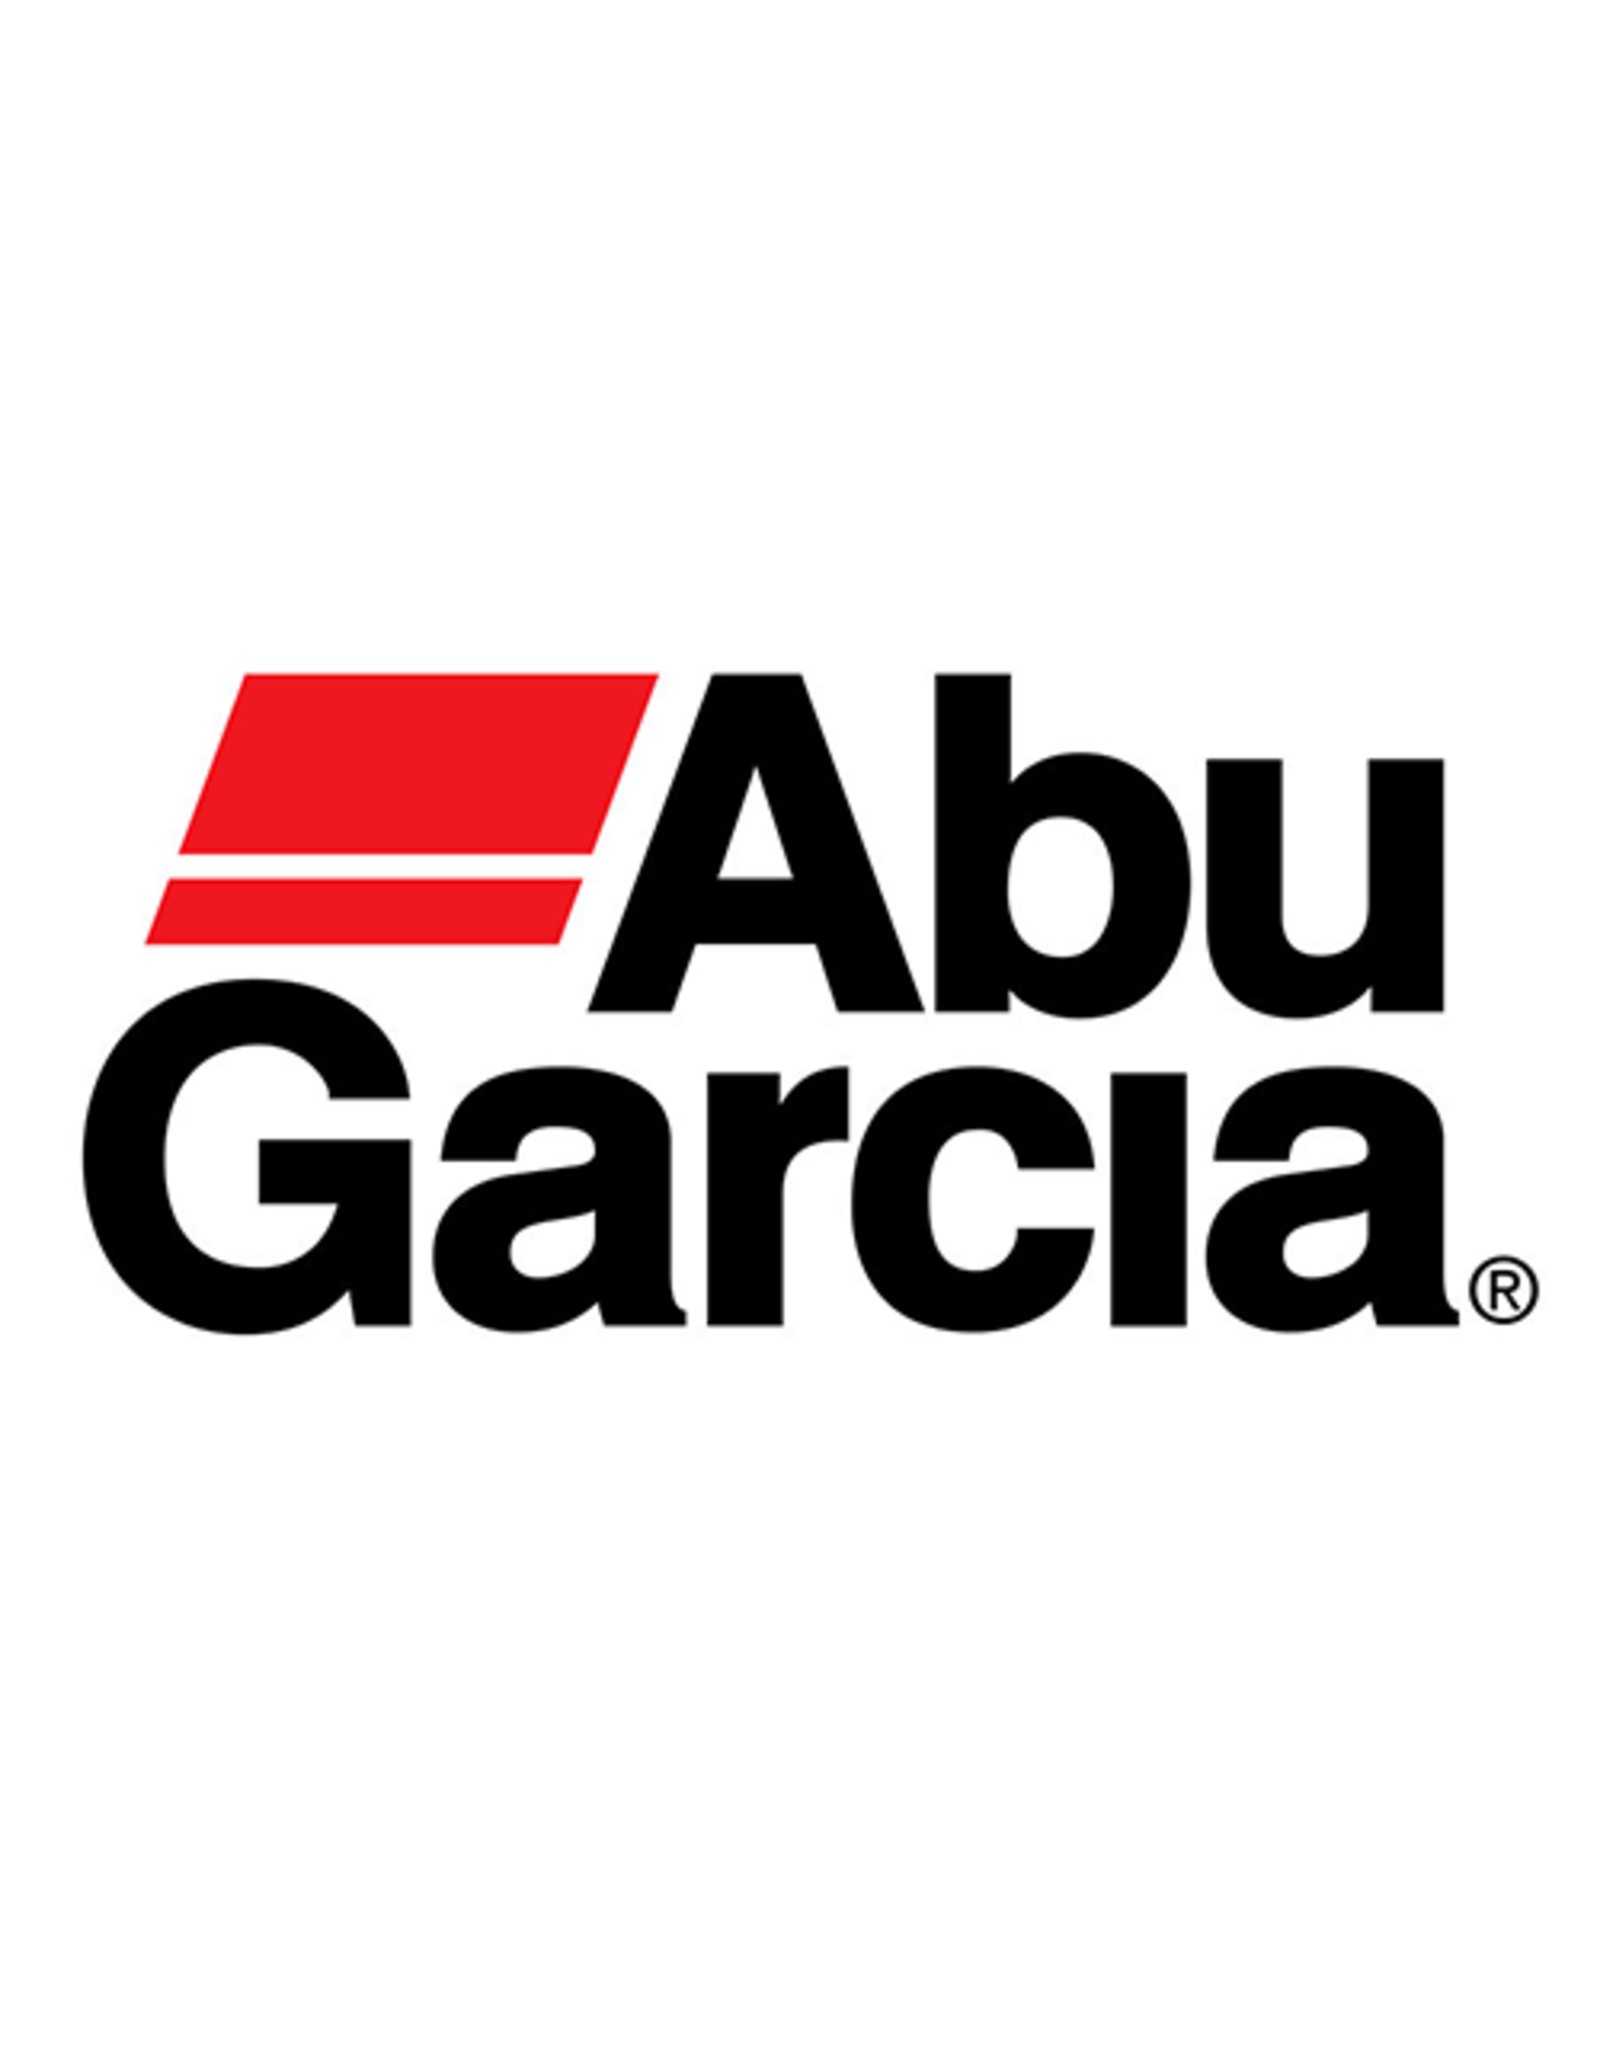 Abu Garcia 1452870  PINION GEAR